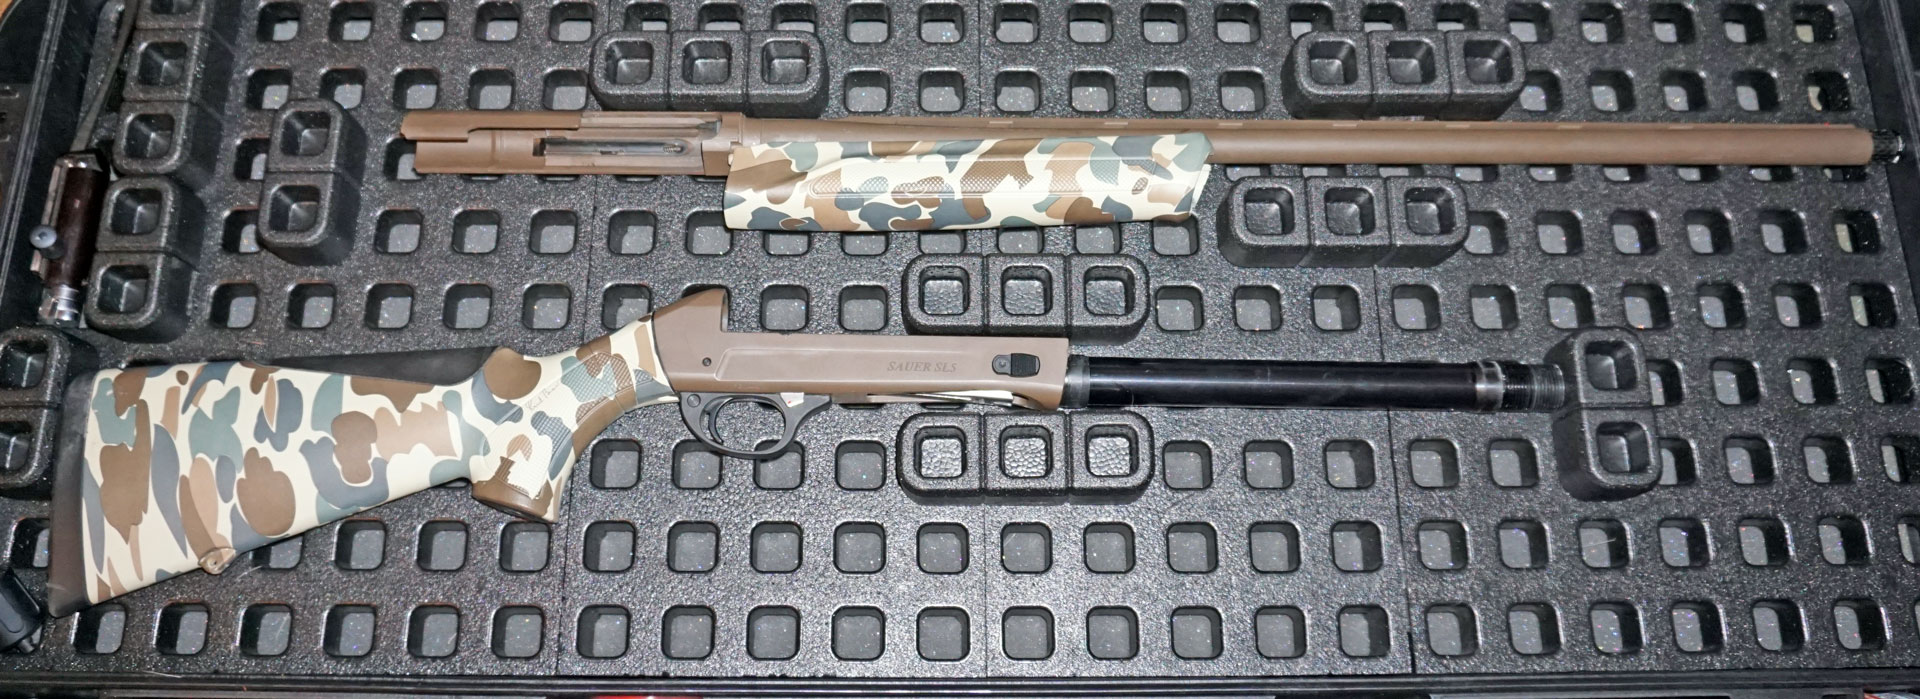 SL5 in R44 Rifle case